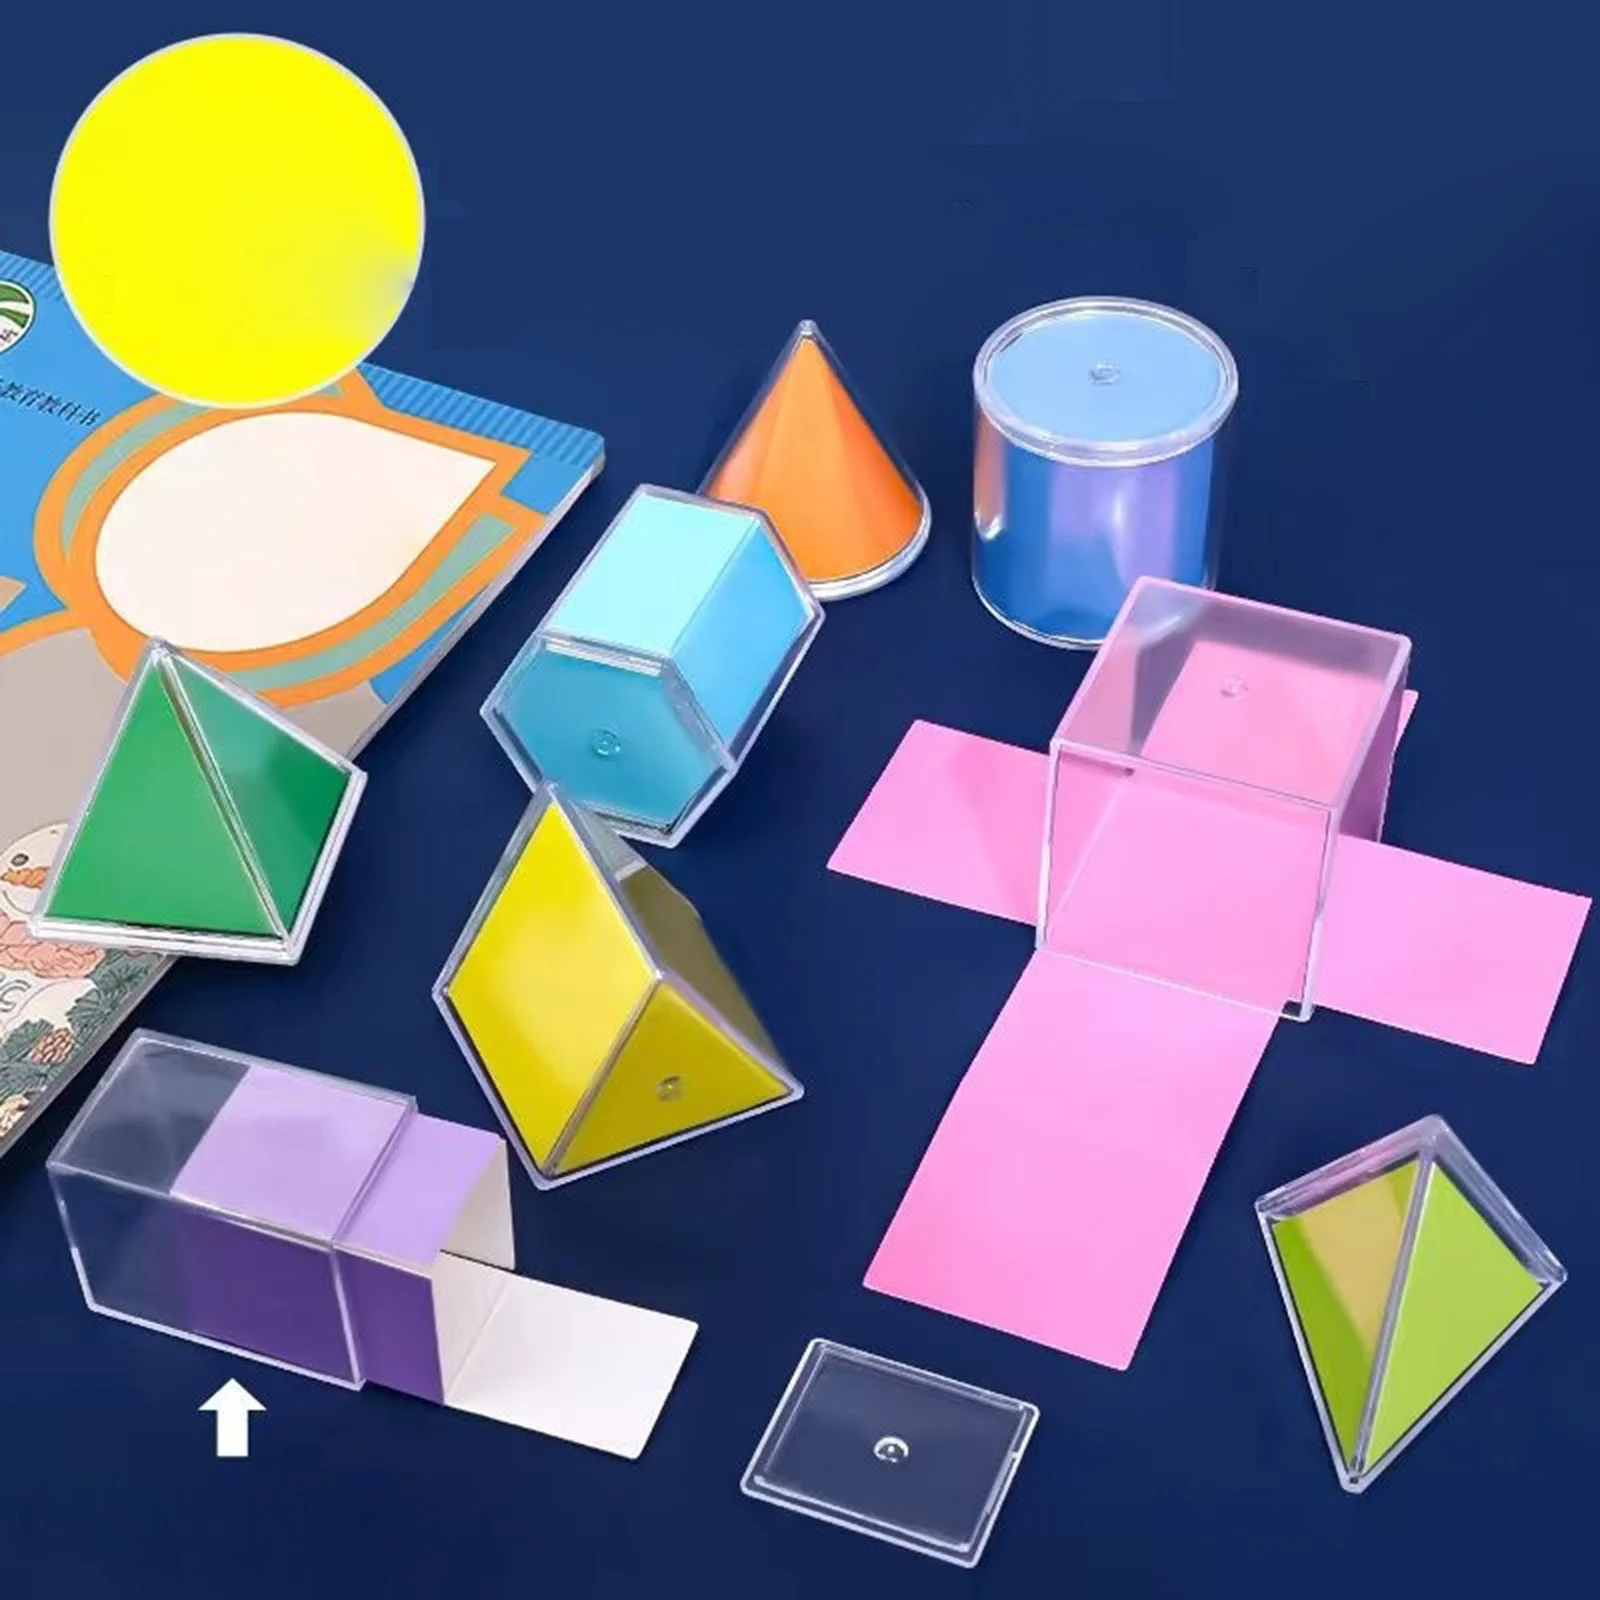 أشكال هندسية ثلاثية الأبعاد للأطفال ، نمط مونتيسوري لرياض الأطفال الابتدائية ، أعمار 3 4 5 و 6 سنوات ، 12 قطعة